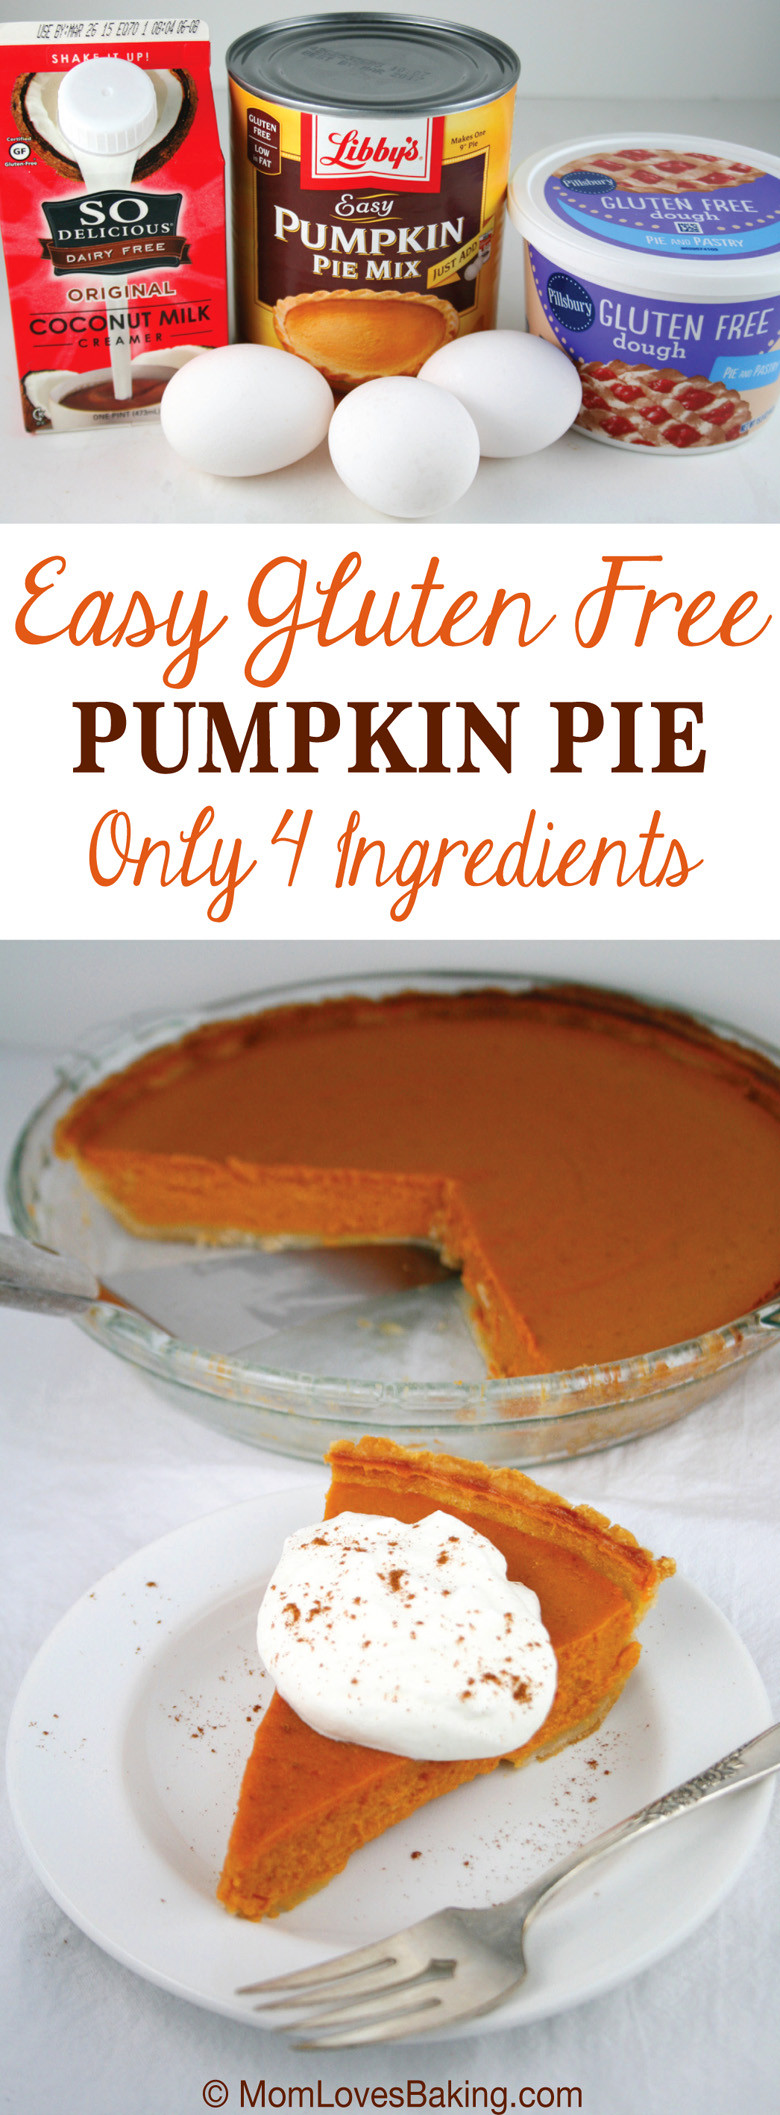 Pumpkin Pie Recipe Easy
 Easy Gluten Free Pumpkin Pie Mom Loves Baking